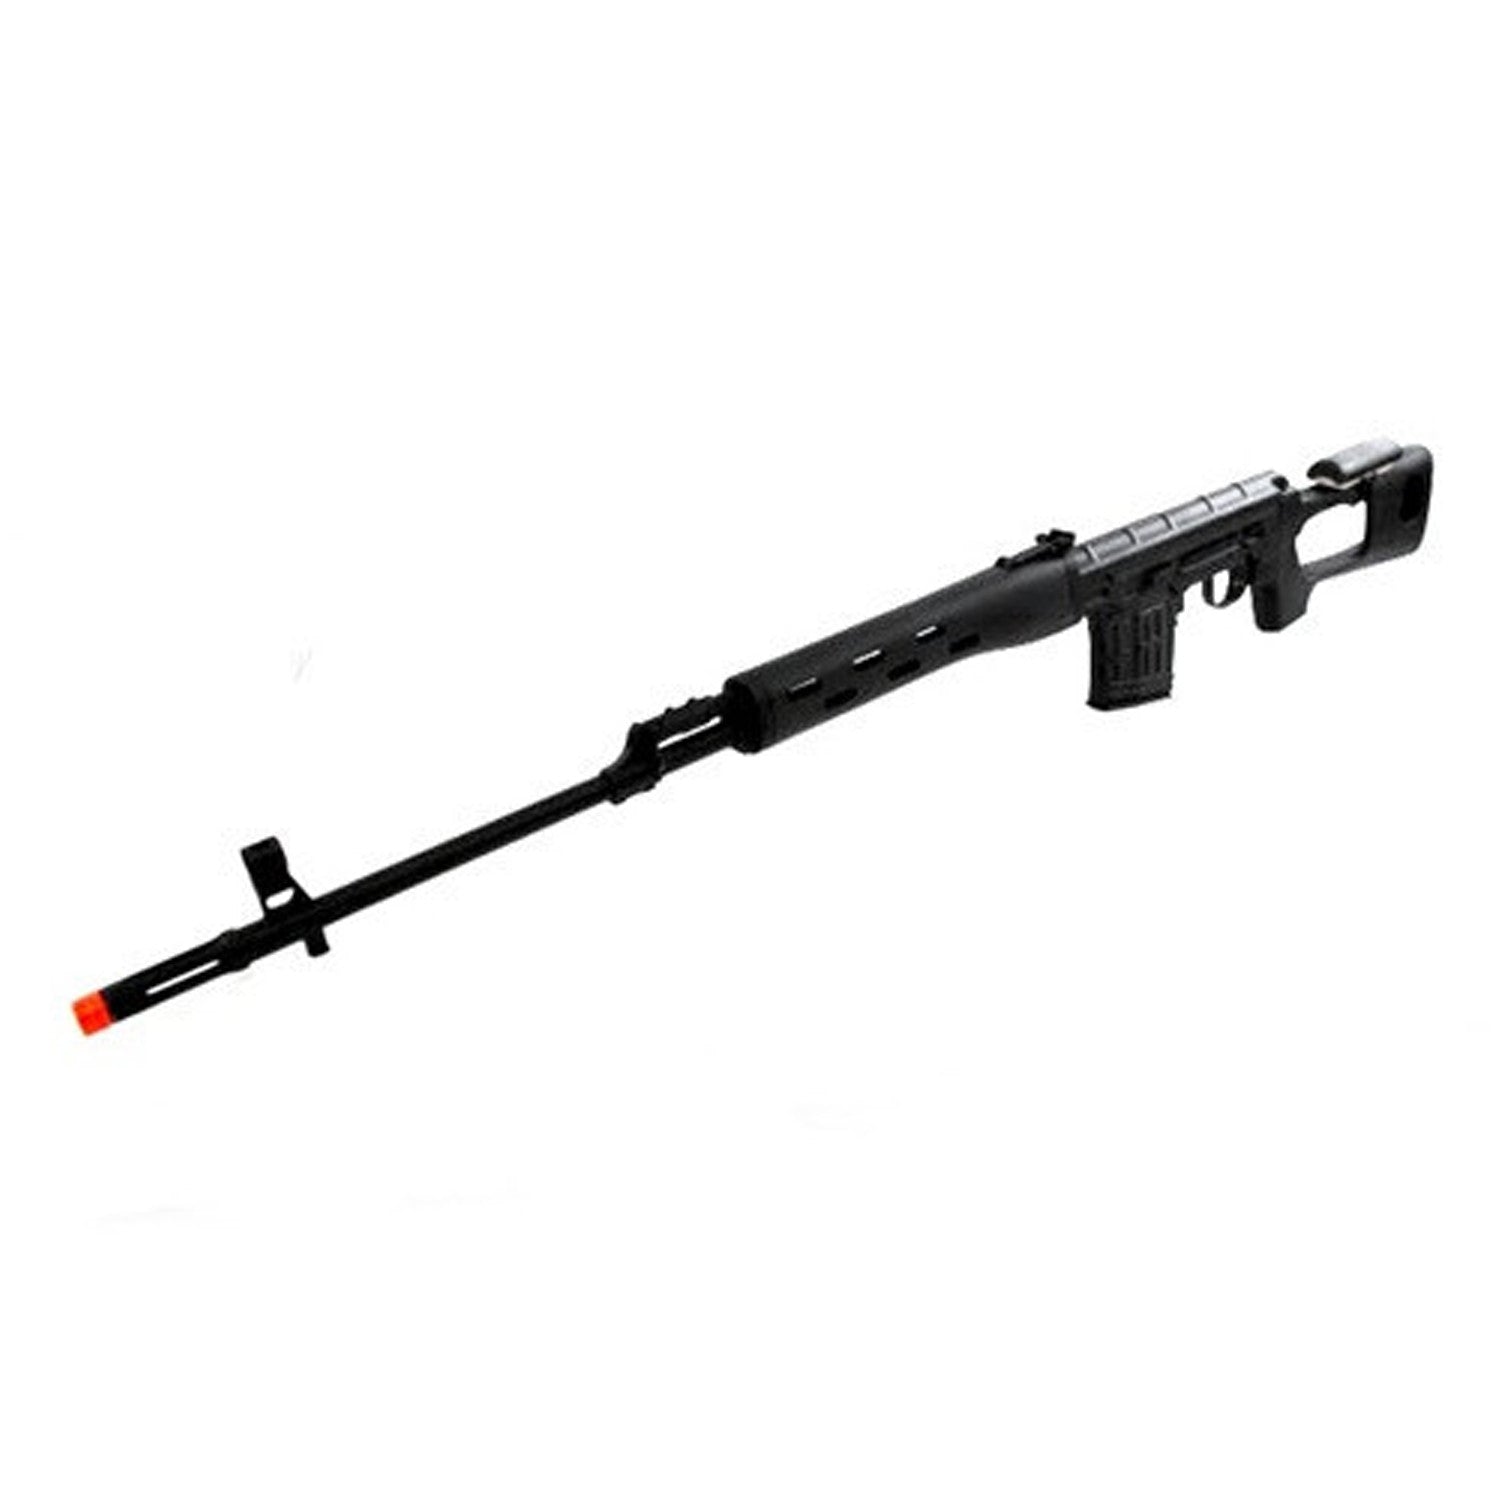 500 FPS A&K SVD Bolt Action sniper rifle